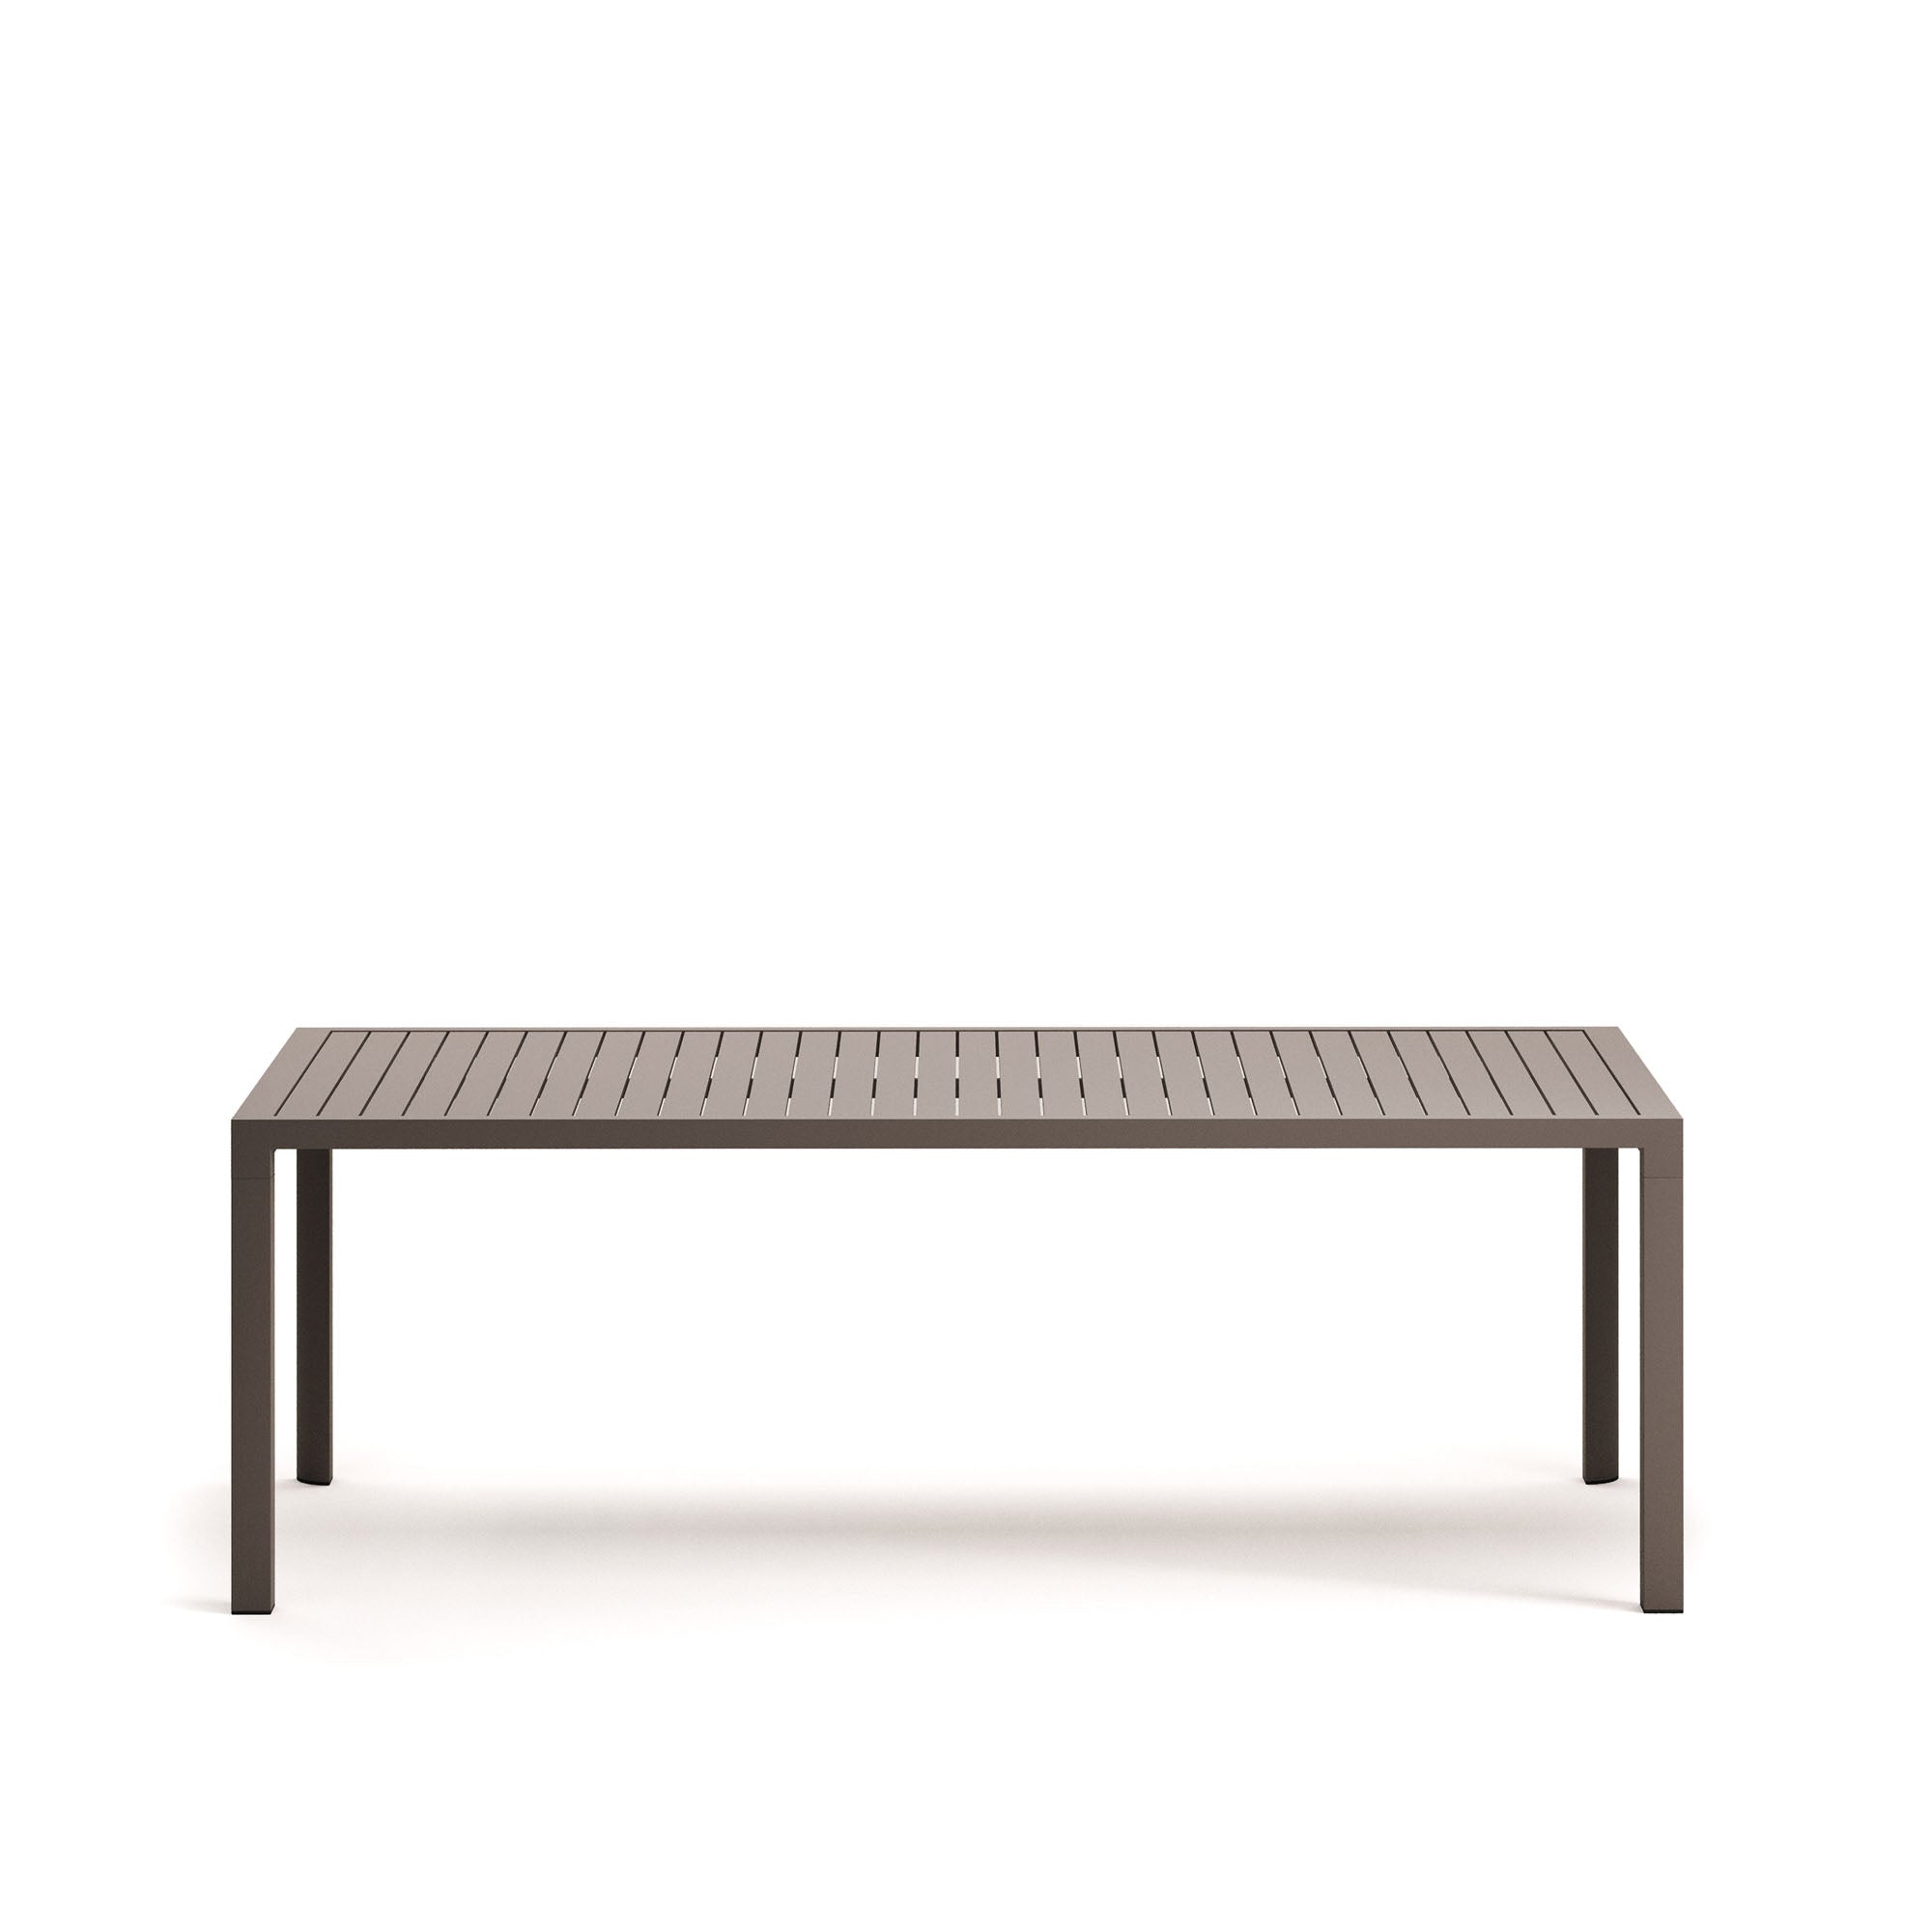 Culip alumínium kültéri asztal, barna színű porszórt bevonattal, 220 x 100 cm